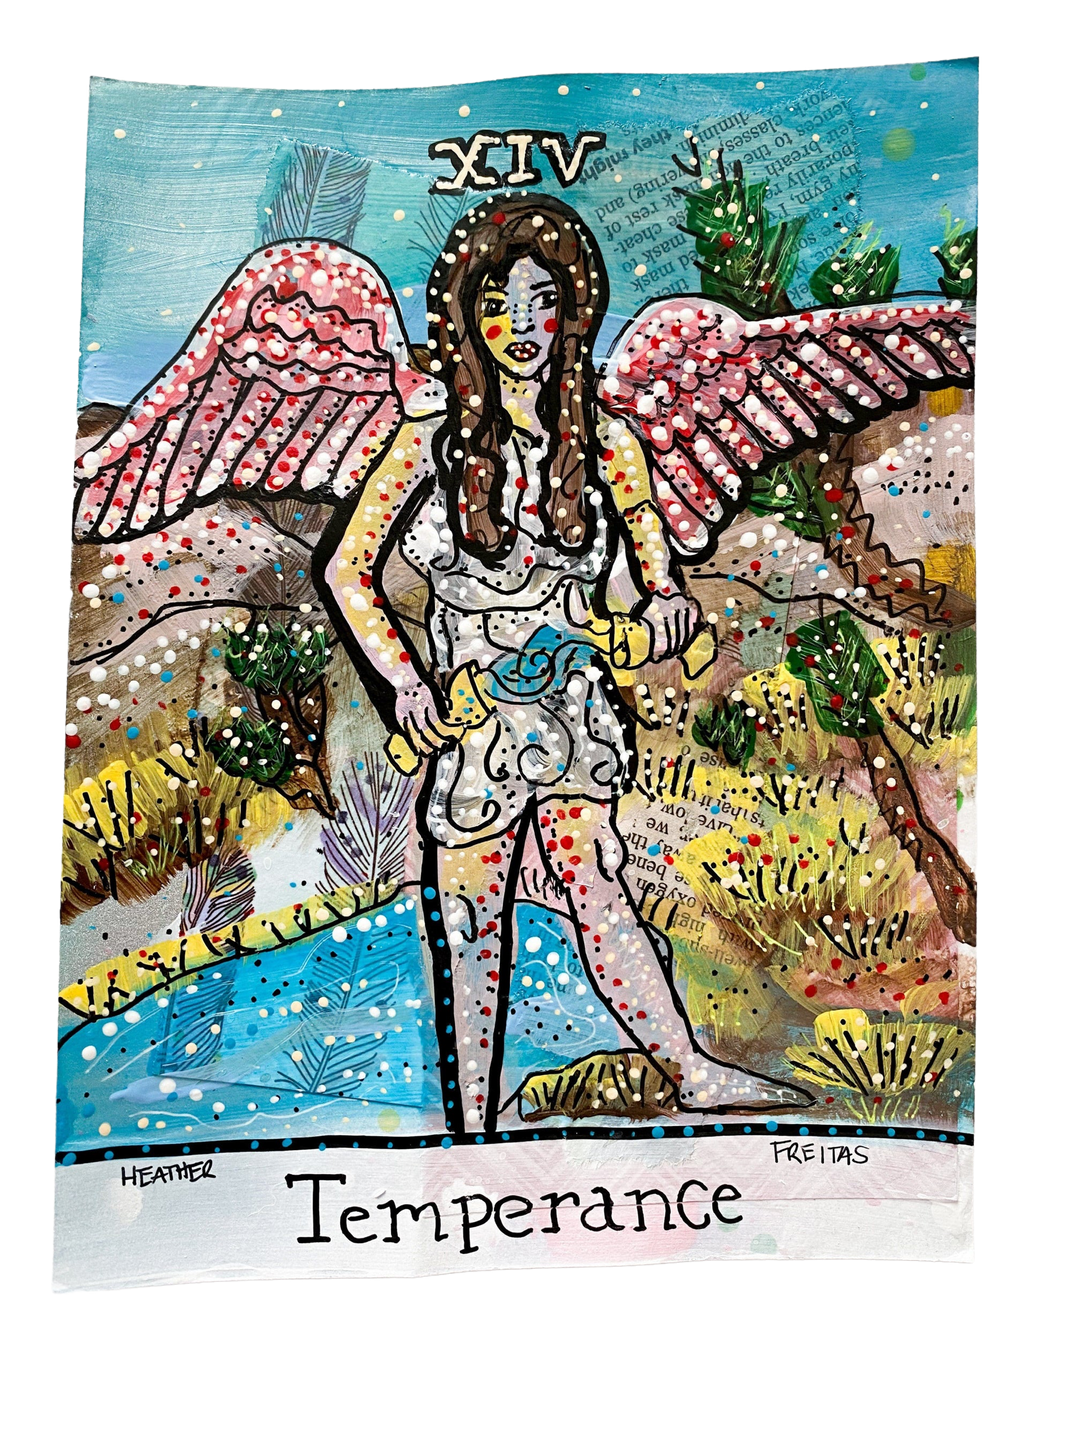 Temperance - Heather Freitas 